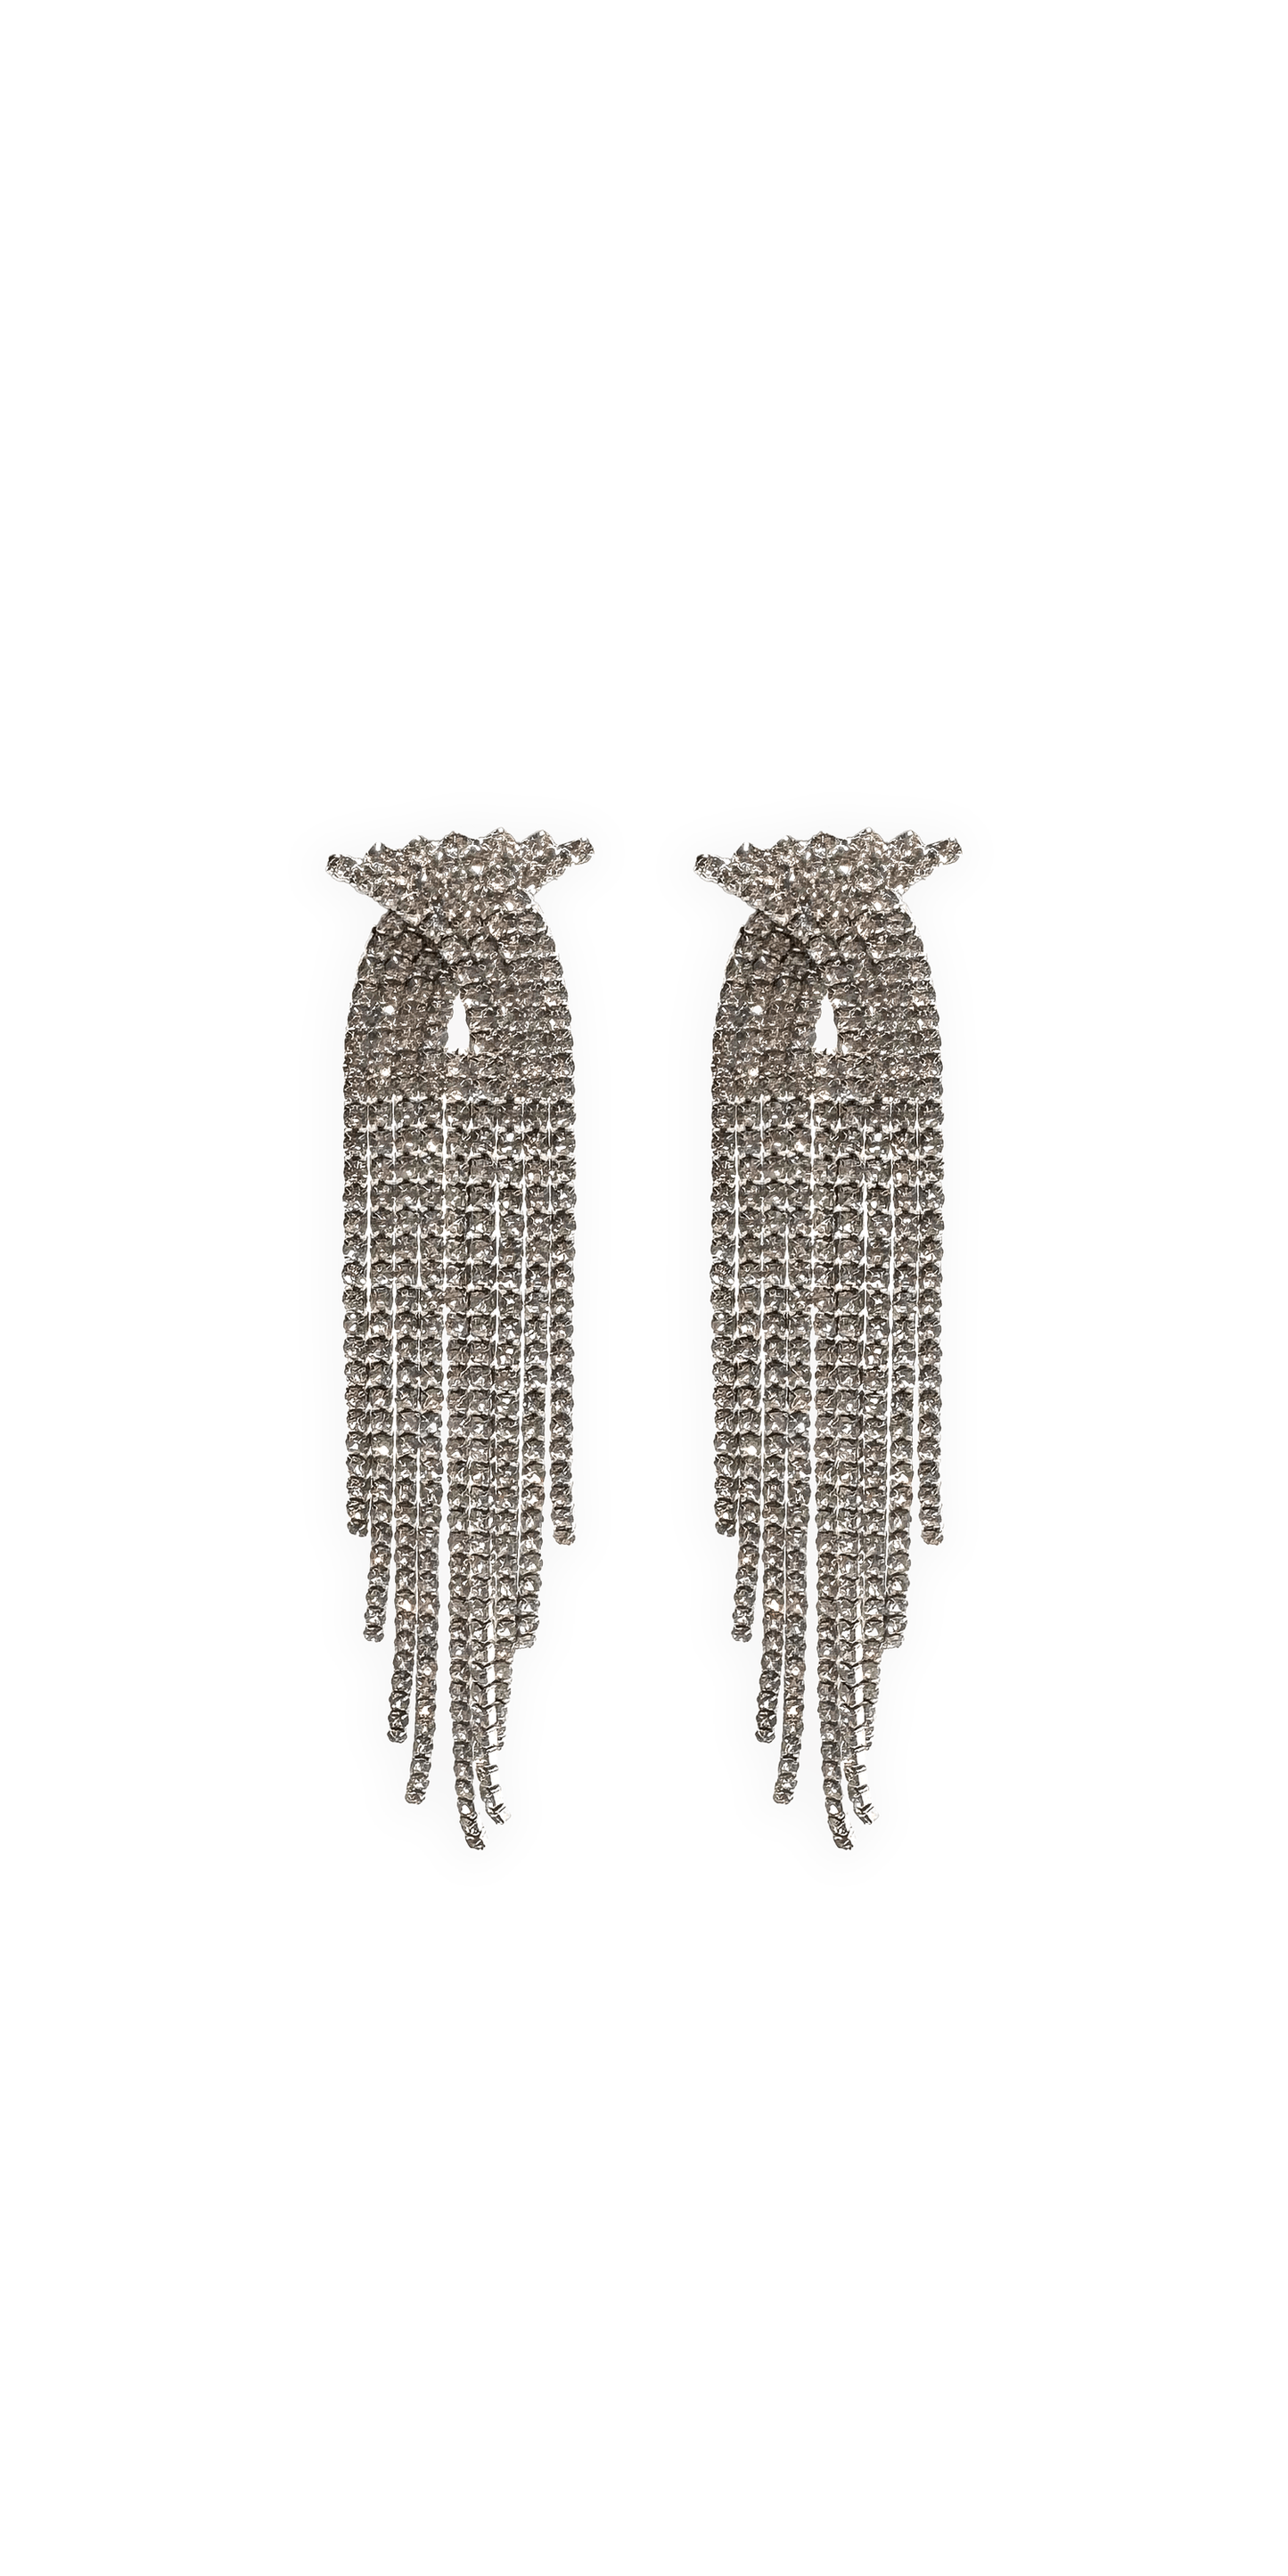 Camille La Vie Rhinestone X Waterfall Earrings missy / OS / silver